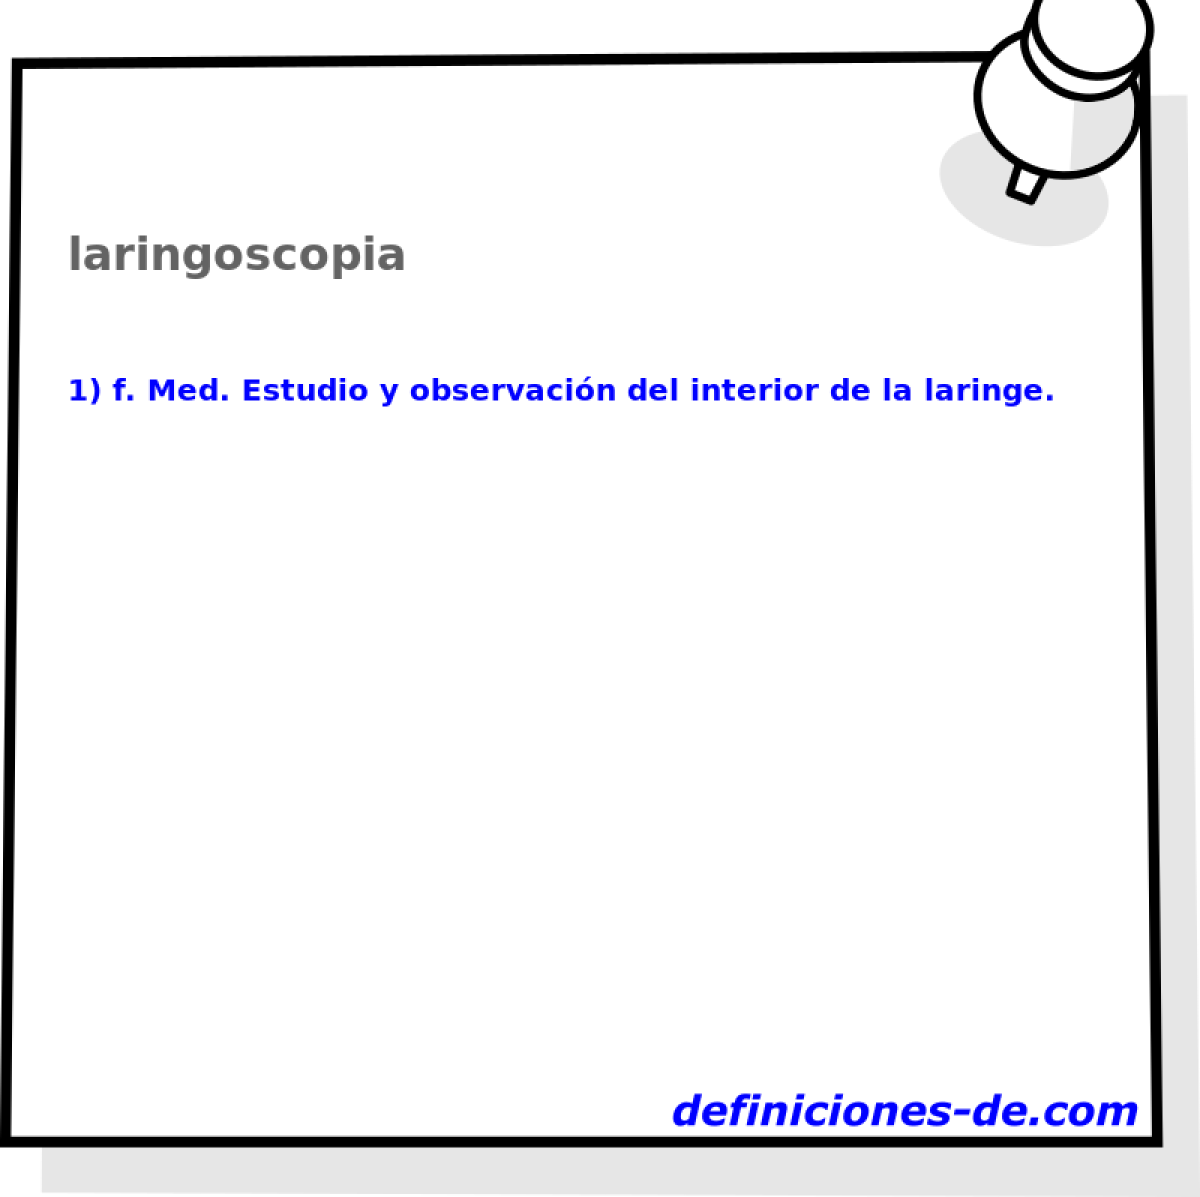 laringoscopia 